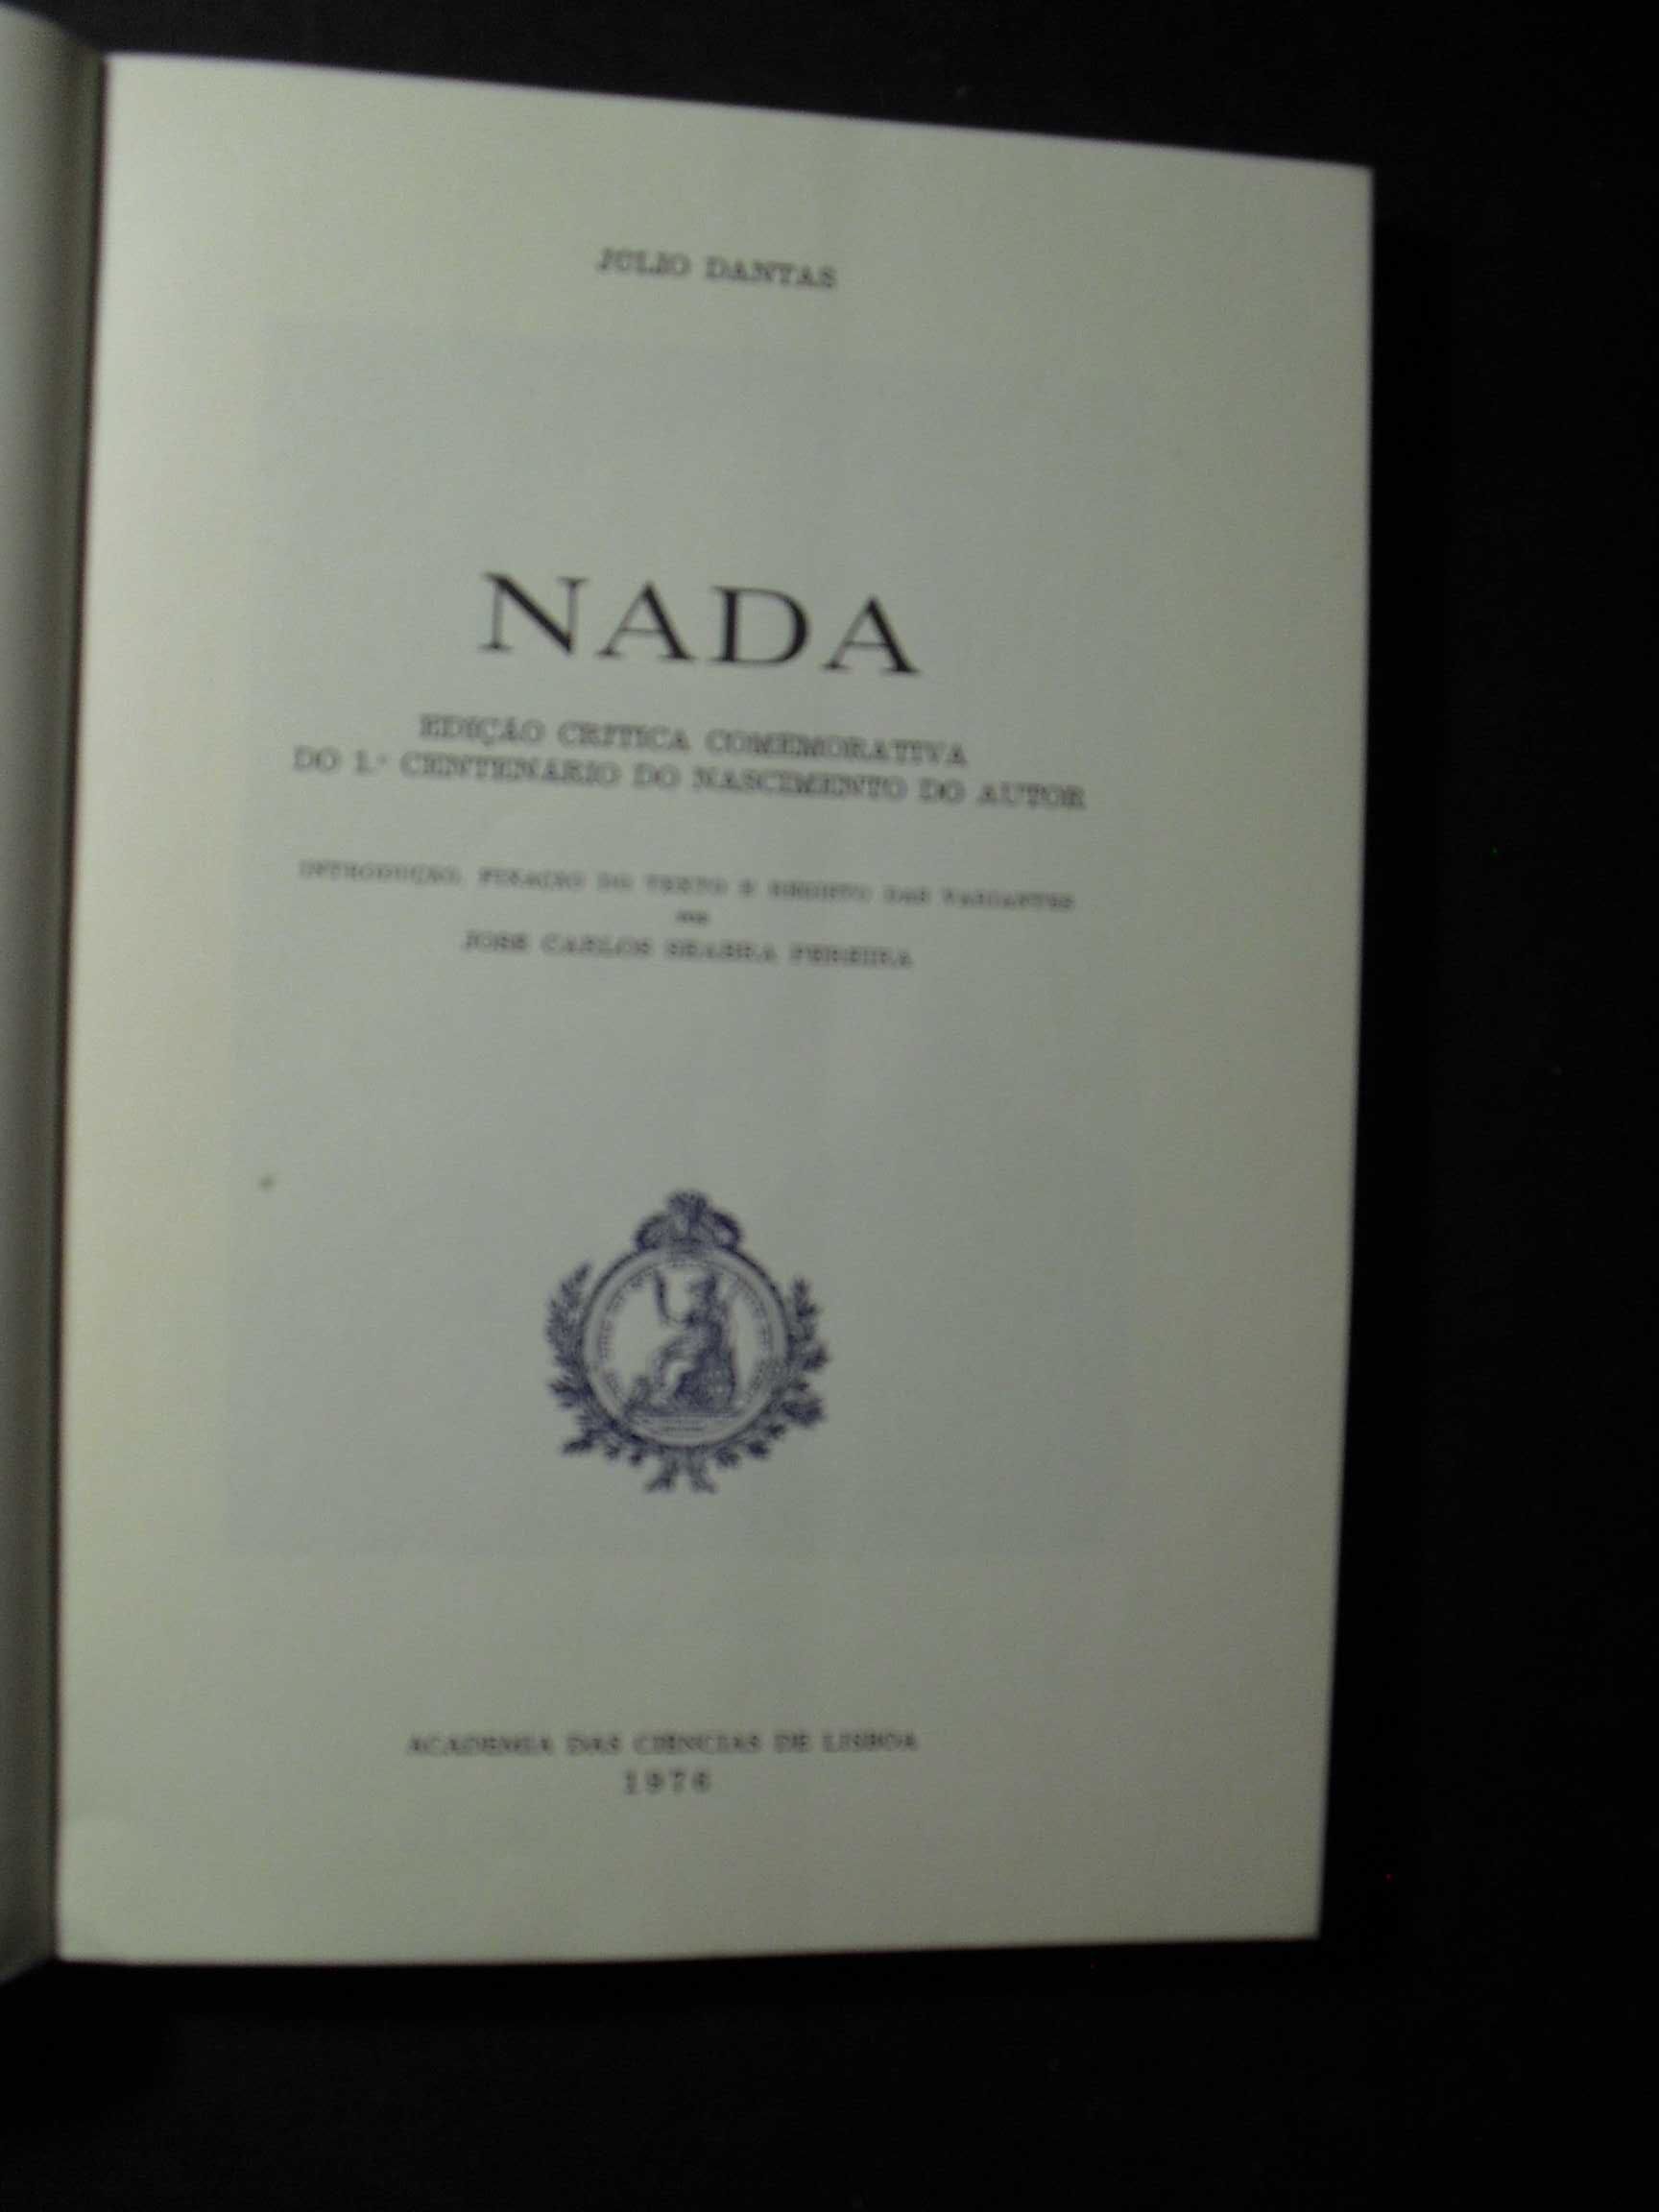 Julio Dantas-Nada-Edição Crítica Comemorativa do 1º Centenário